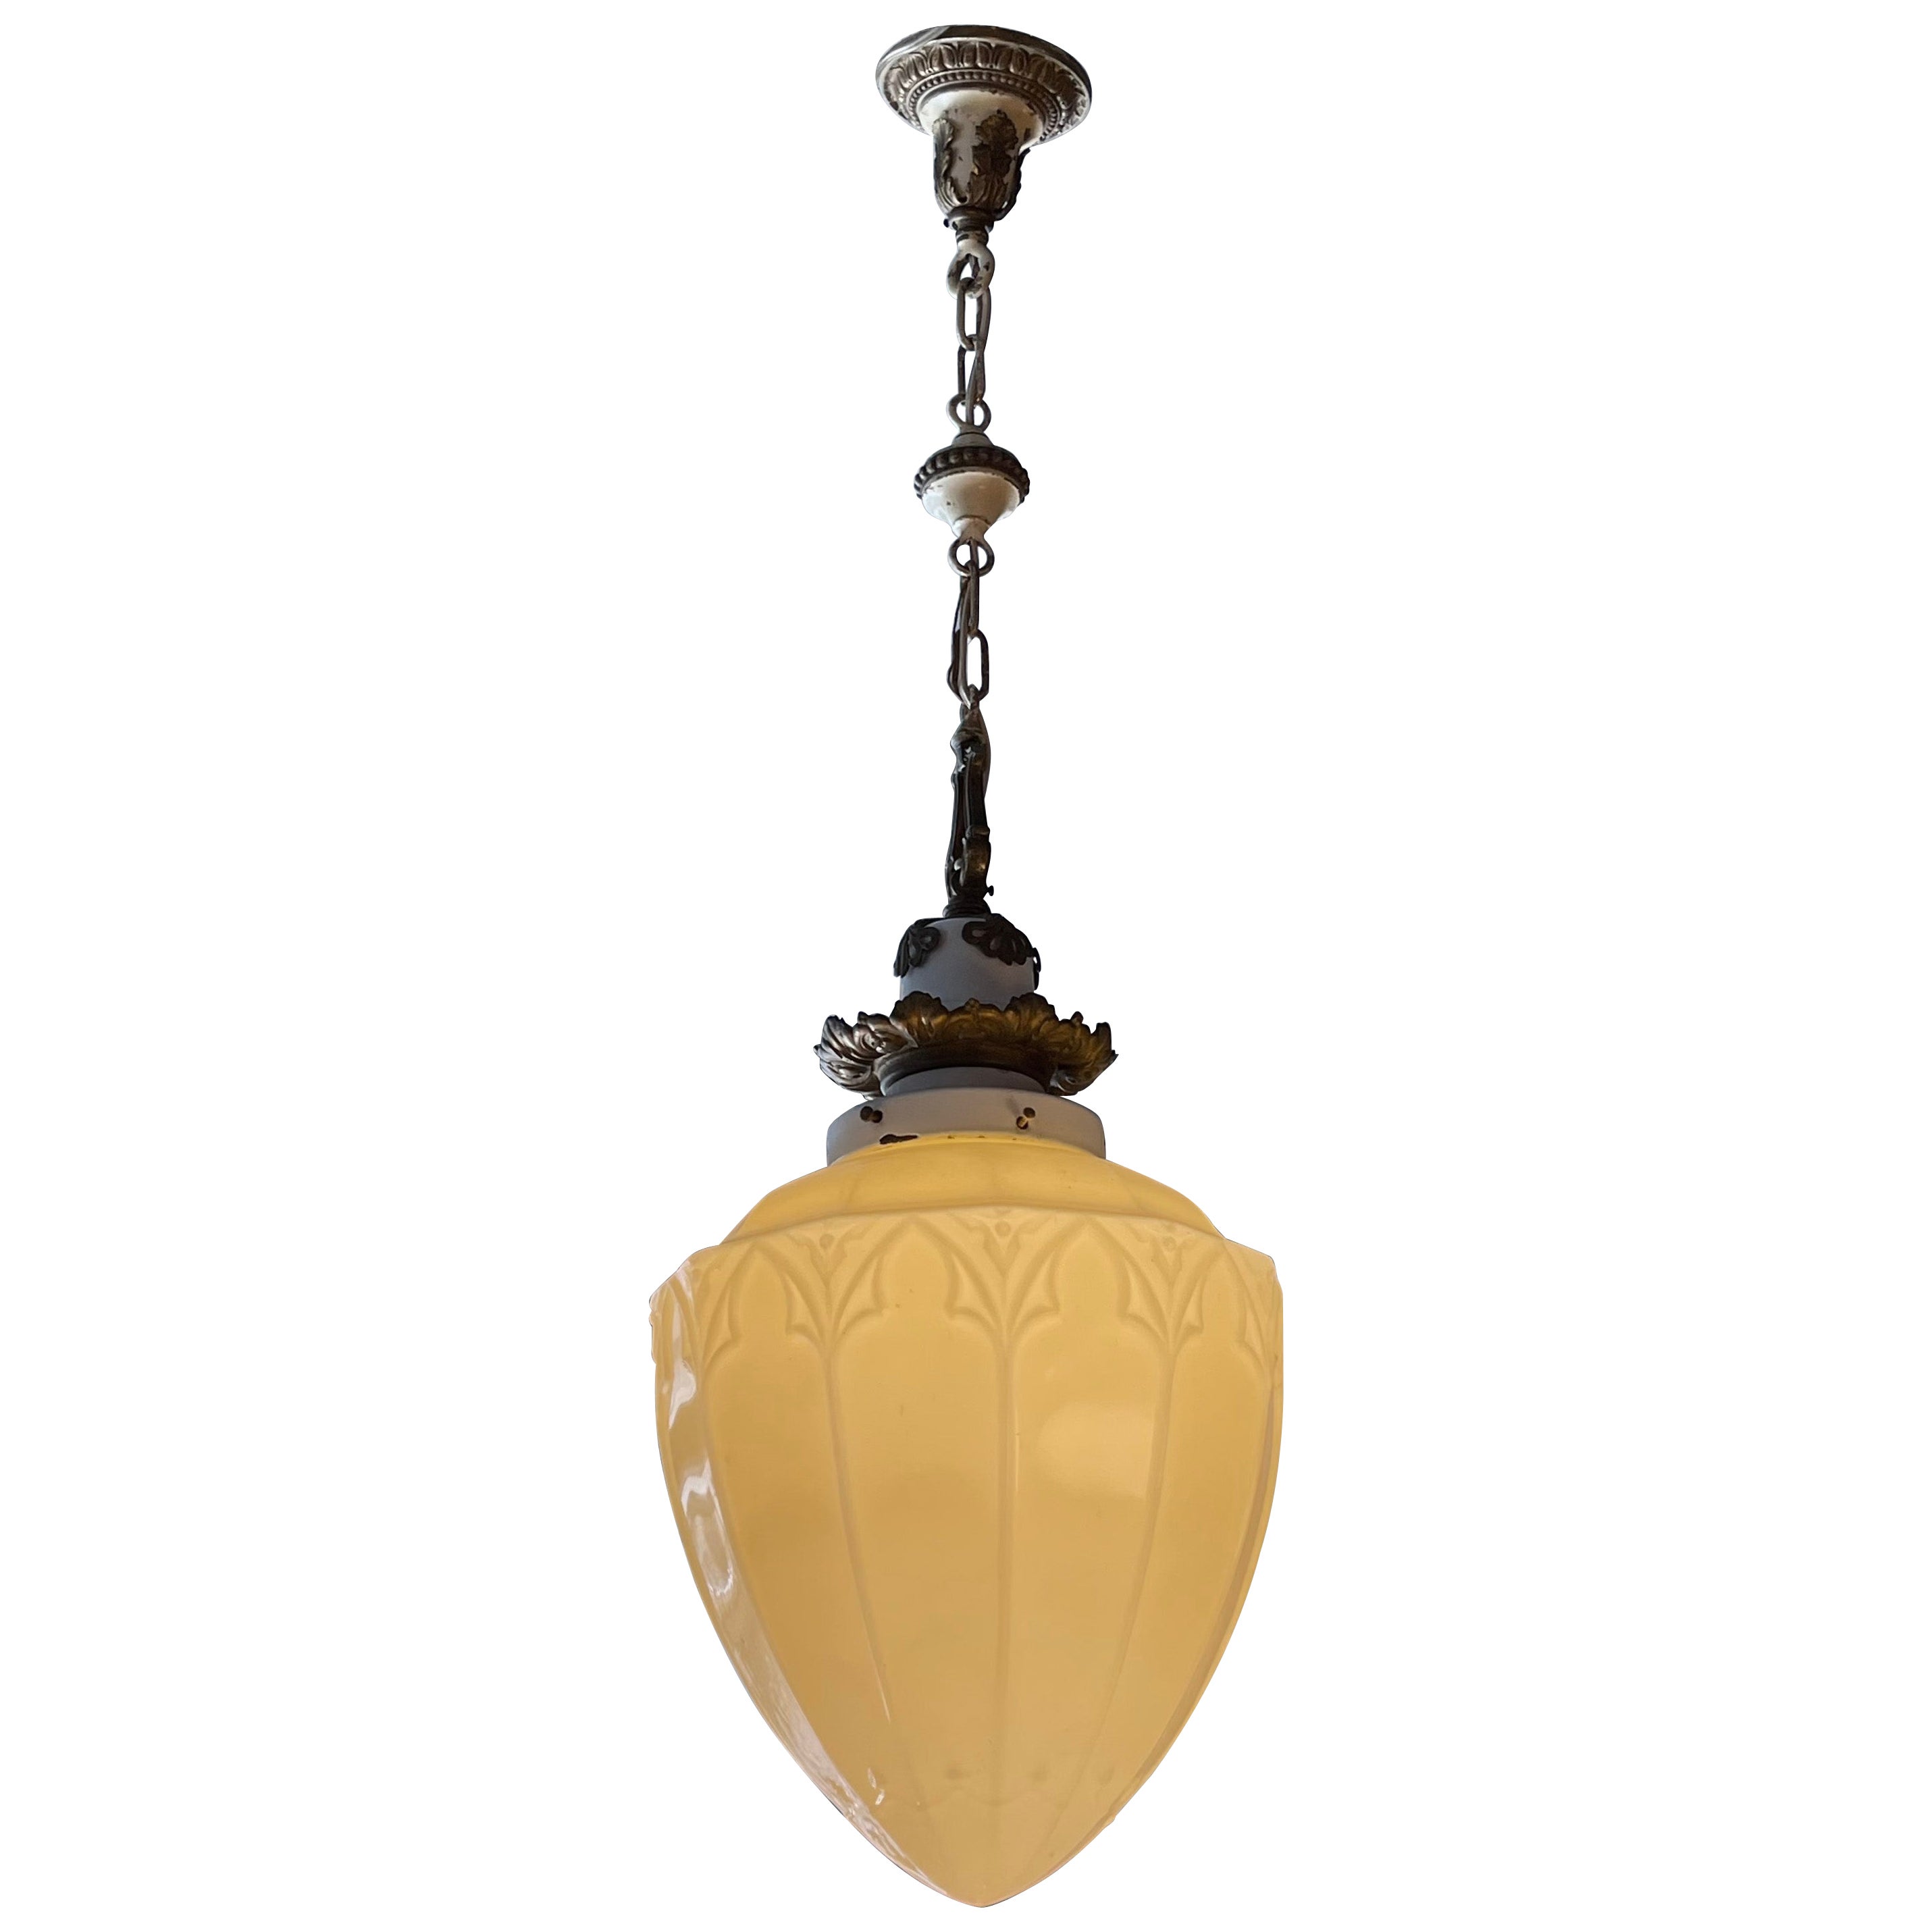 Antique Ornate Vaseline Glass Pendant Light